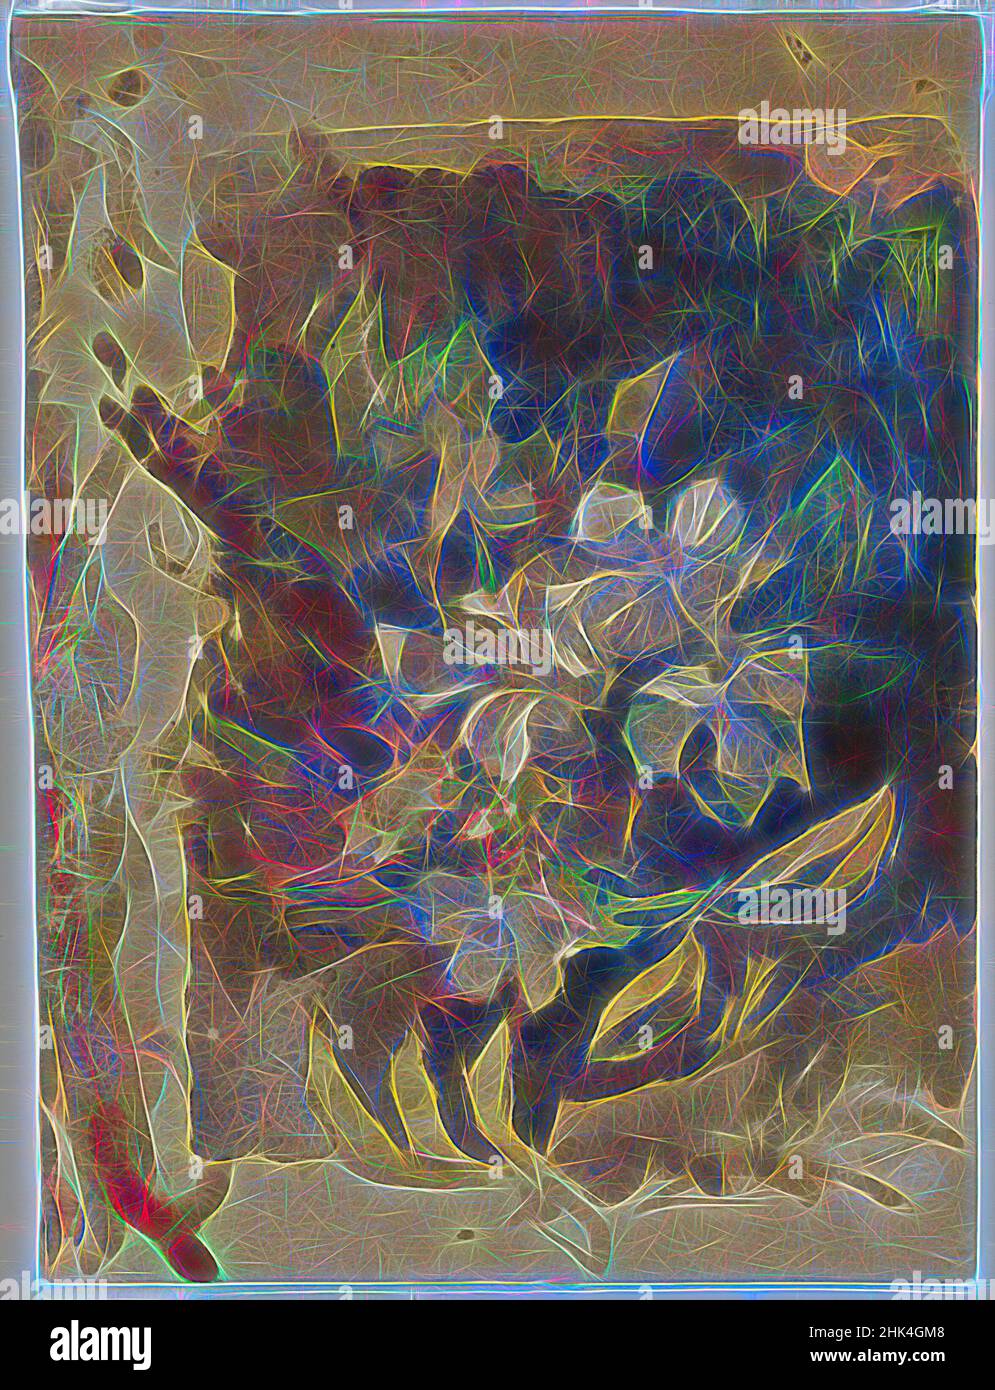 Inspiriert von Apfelblüten im Sonnenlicht, John La Farge, Amerikaner, 1835-1910, Aquarell und Graphit auf cremefarbenem, dickem, grob strukturiertem Wove-Papier, ca. 1870s, 11 x 8 Zoll, 27,9 x 20,3 cm, Apfel, Apfelblüten, Jahrhundert, Farbe, Blumen, grün, neunzehnten, Malerei, Papier, Stillleben, Wasser, neu erfunden von Artotop. Klassische Kunst neu erfunden mit einem modernen Twist. Design von warmen fröhlichen Leuchten der Helligkeit und Lichtstrahl Strahlkraft. Fotografie inspiriert von Surrealismus und Futurismus, umarmt dynamische Energie der modernen Technologie, Bewegung, Geschwindigkeit und Kultur zu revolutionieren Stockfoto